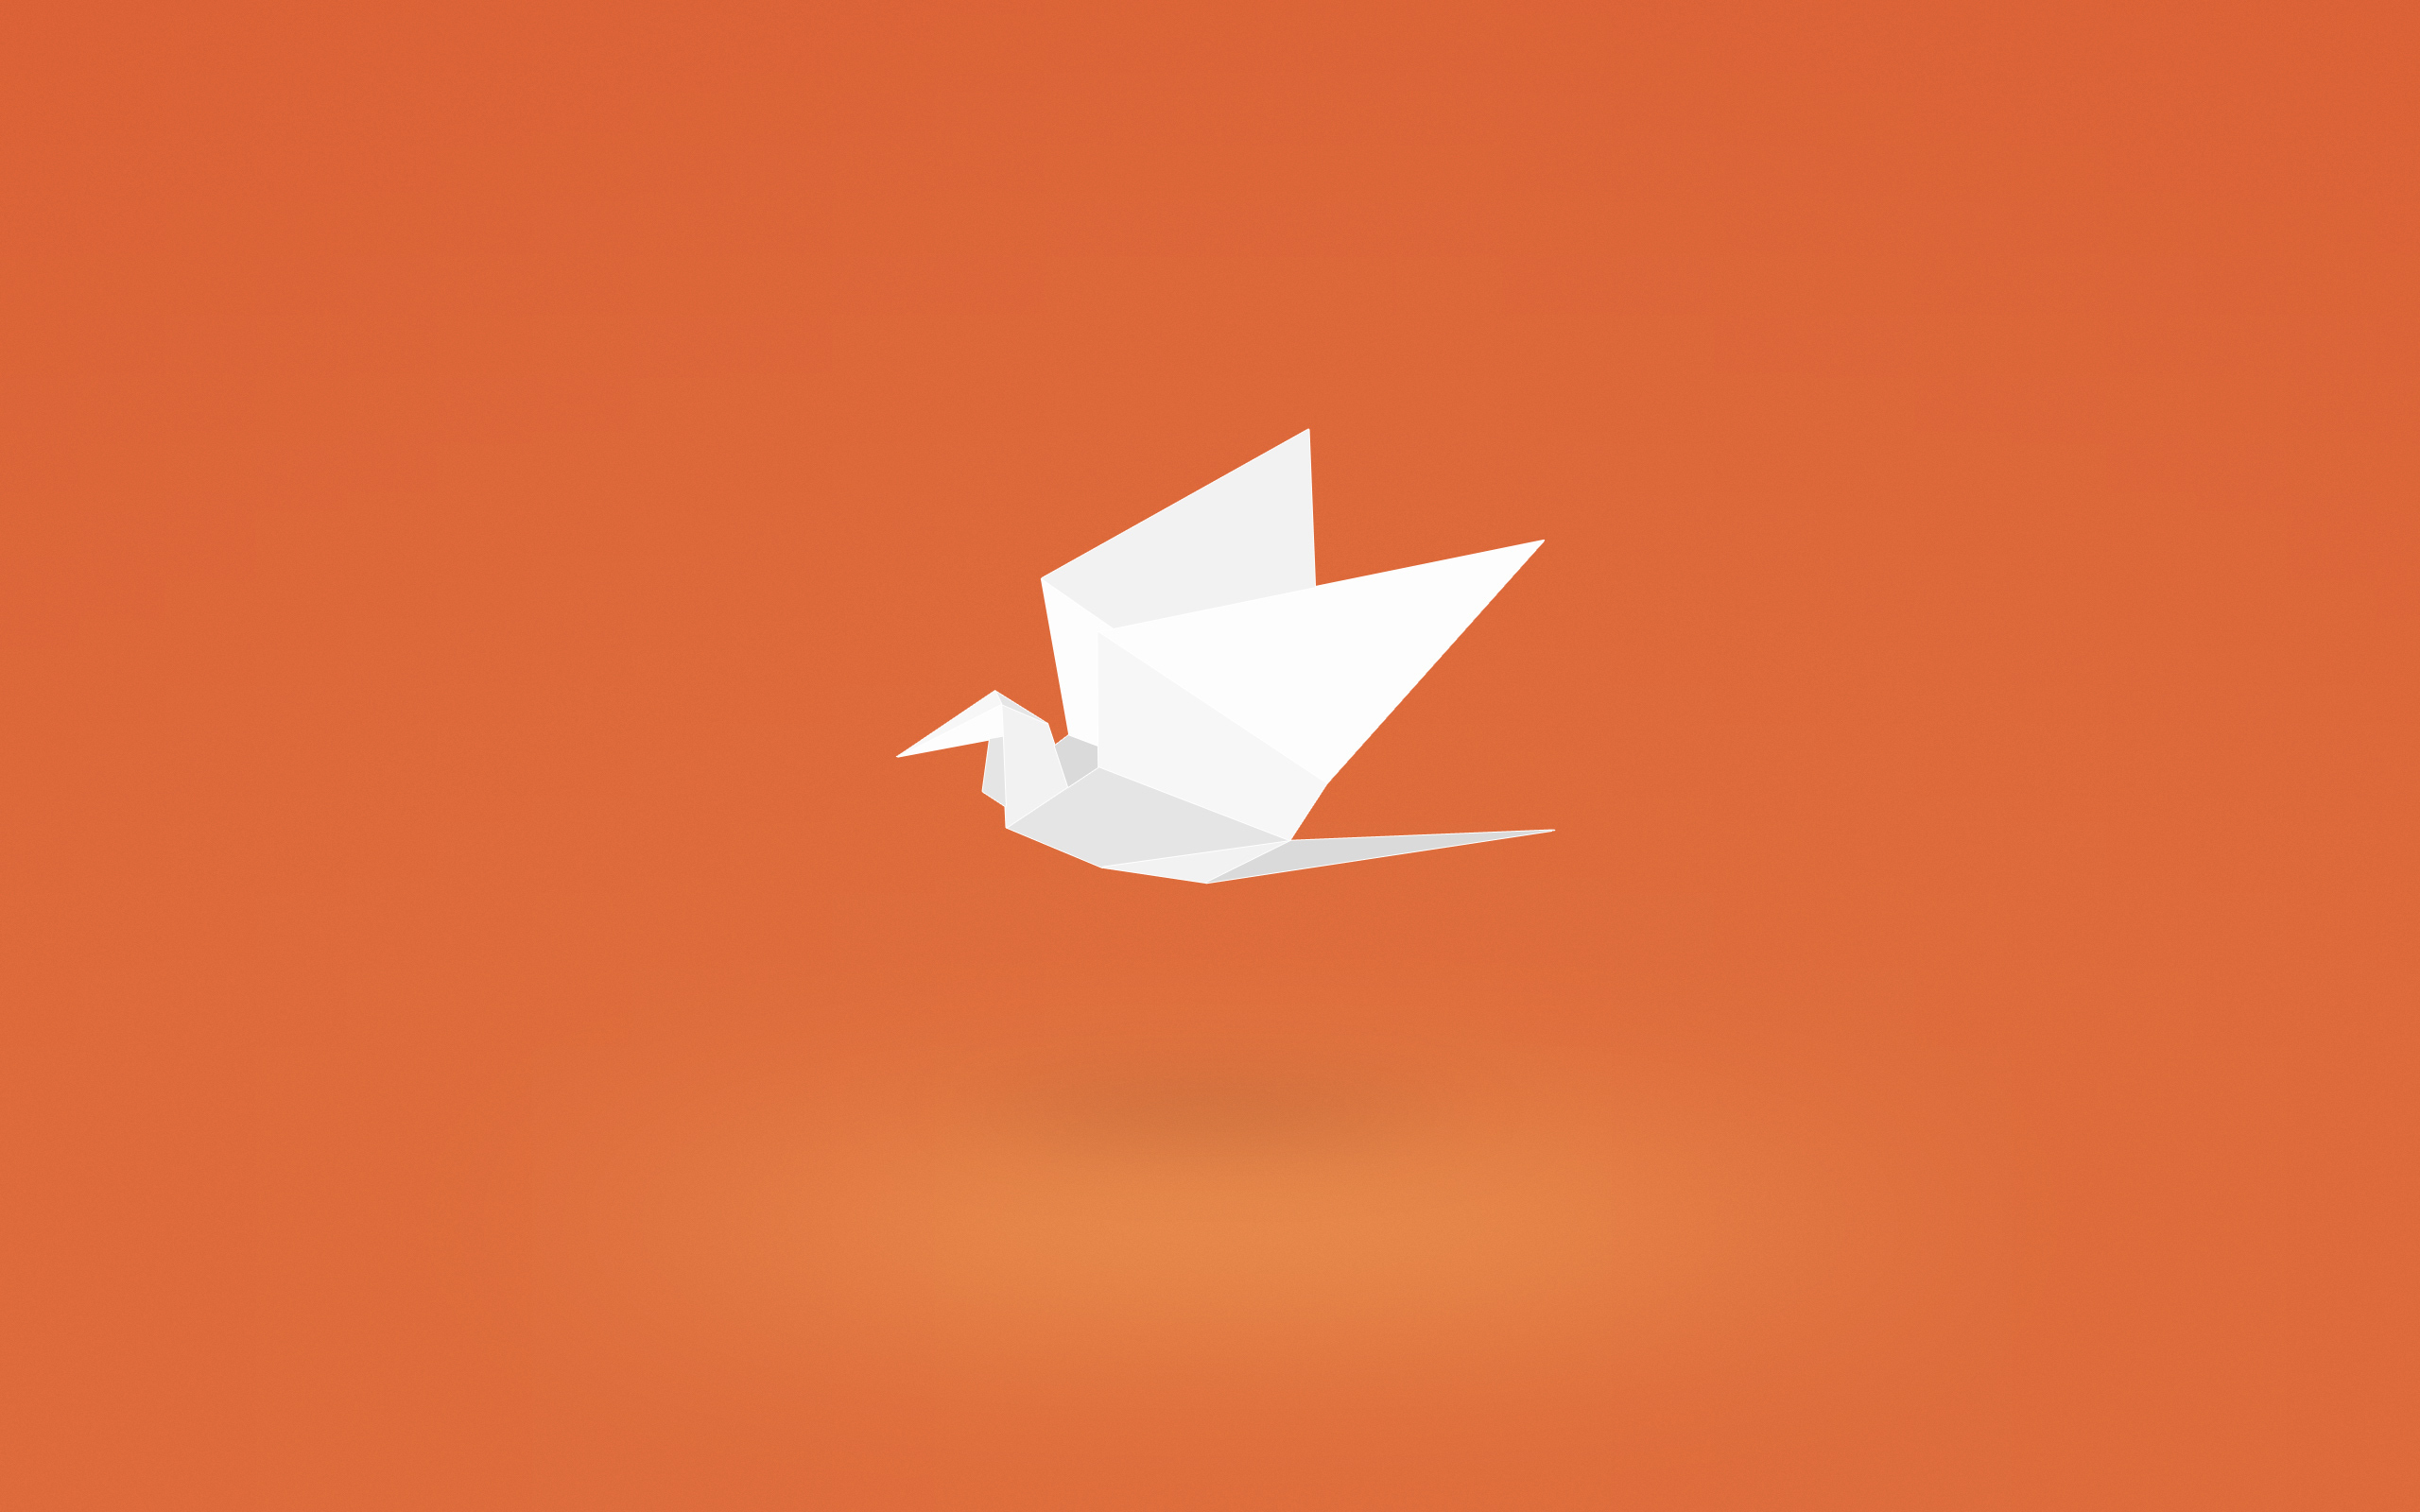 птичка логотип оригами bird logo origami скачать